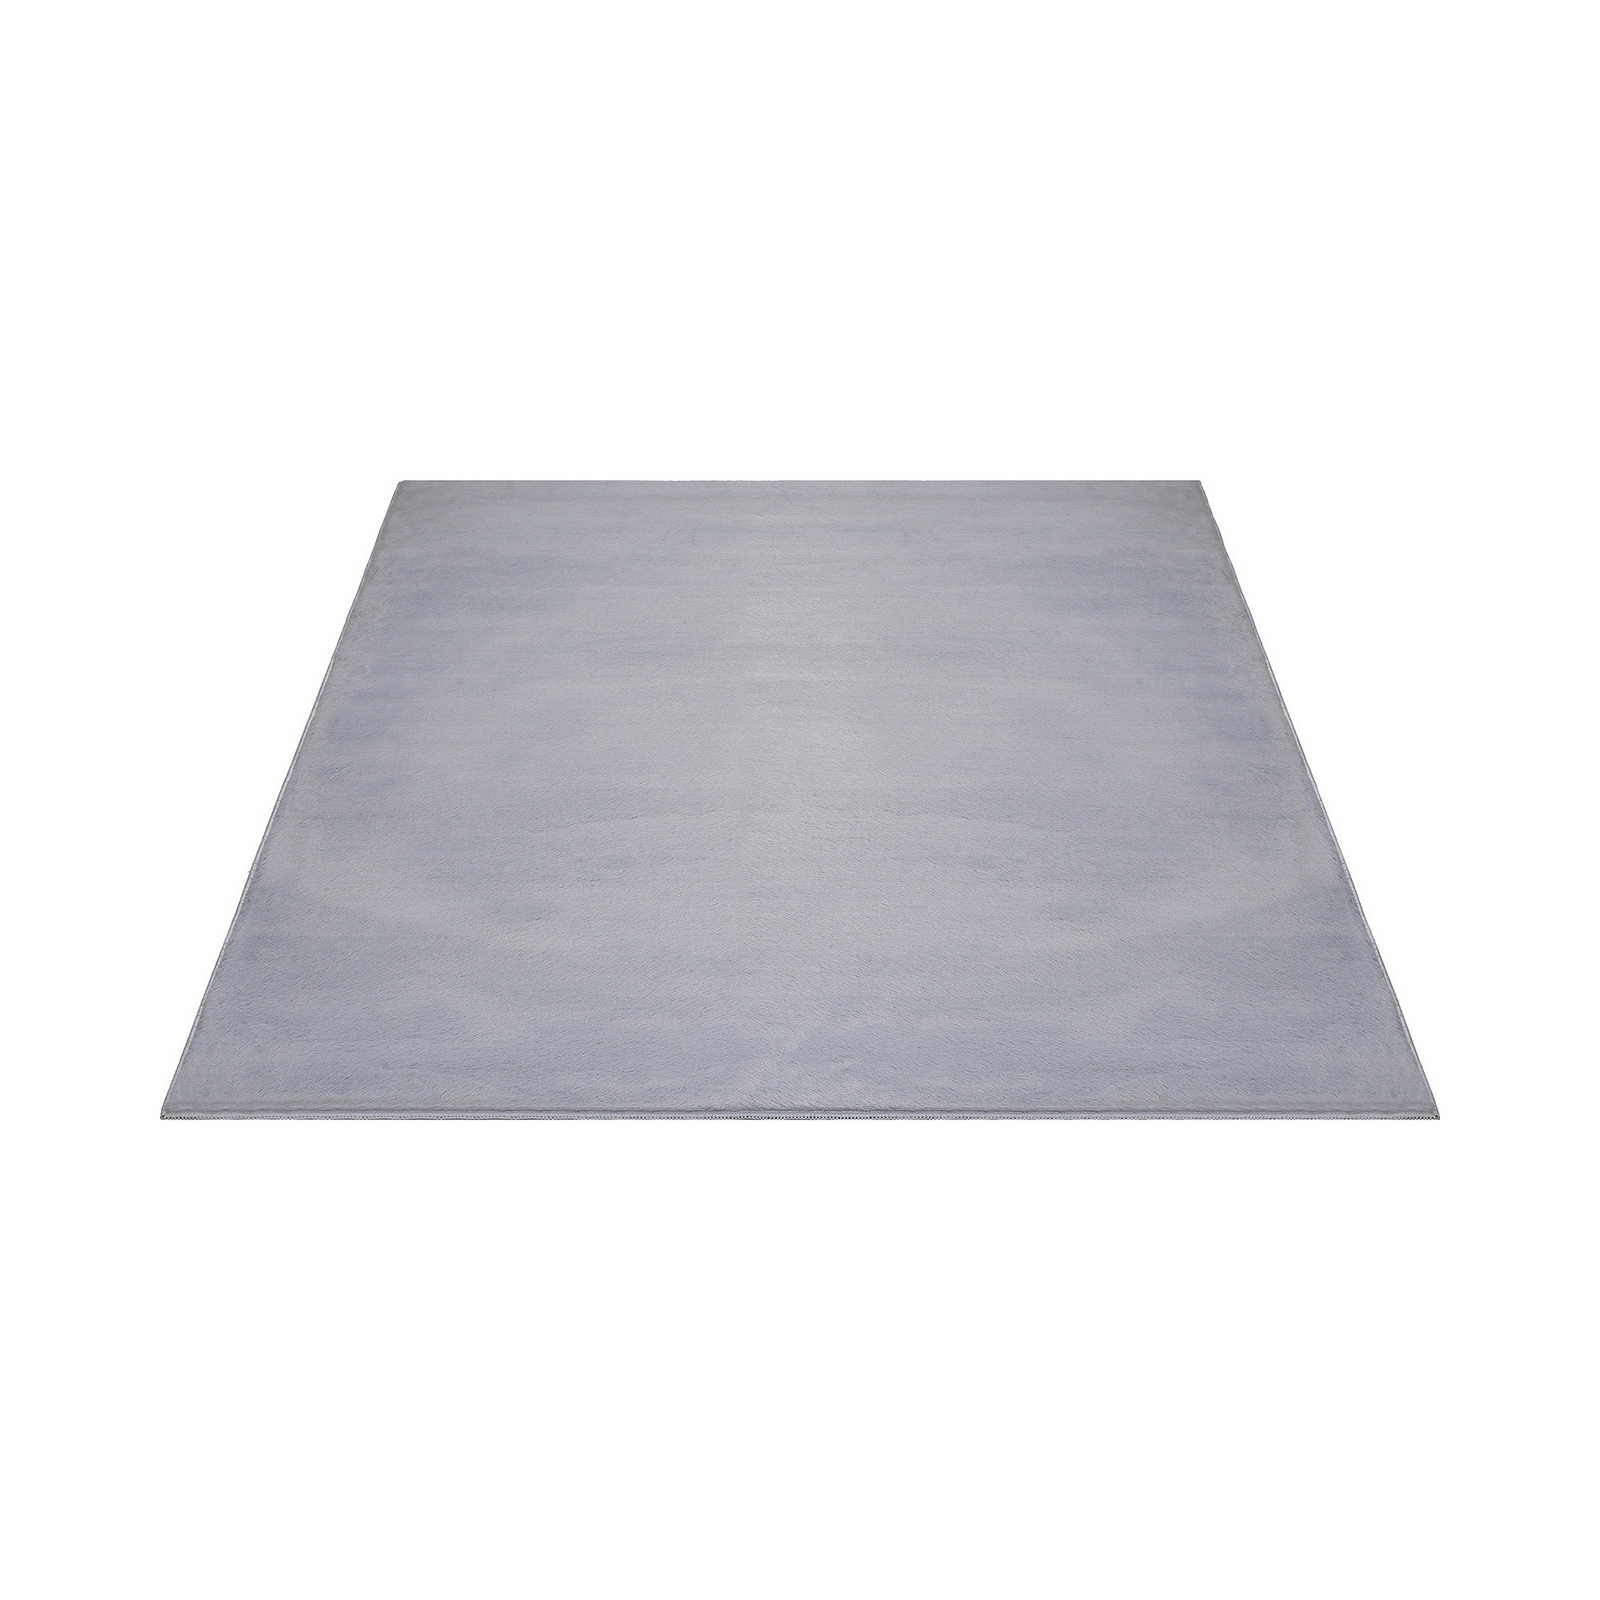 Comfortabel hoogpolig tapijt in zachtgrijs - 280 x 200 cm
